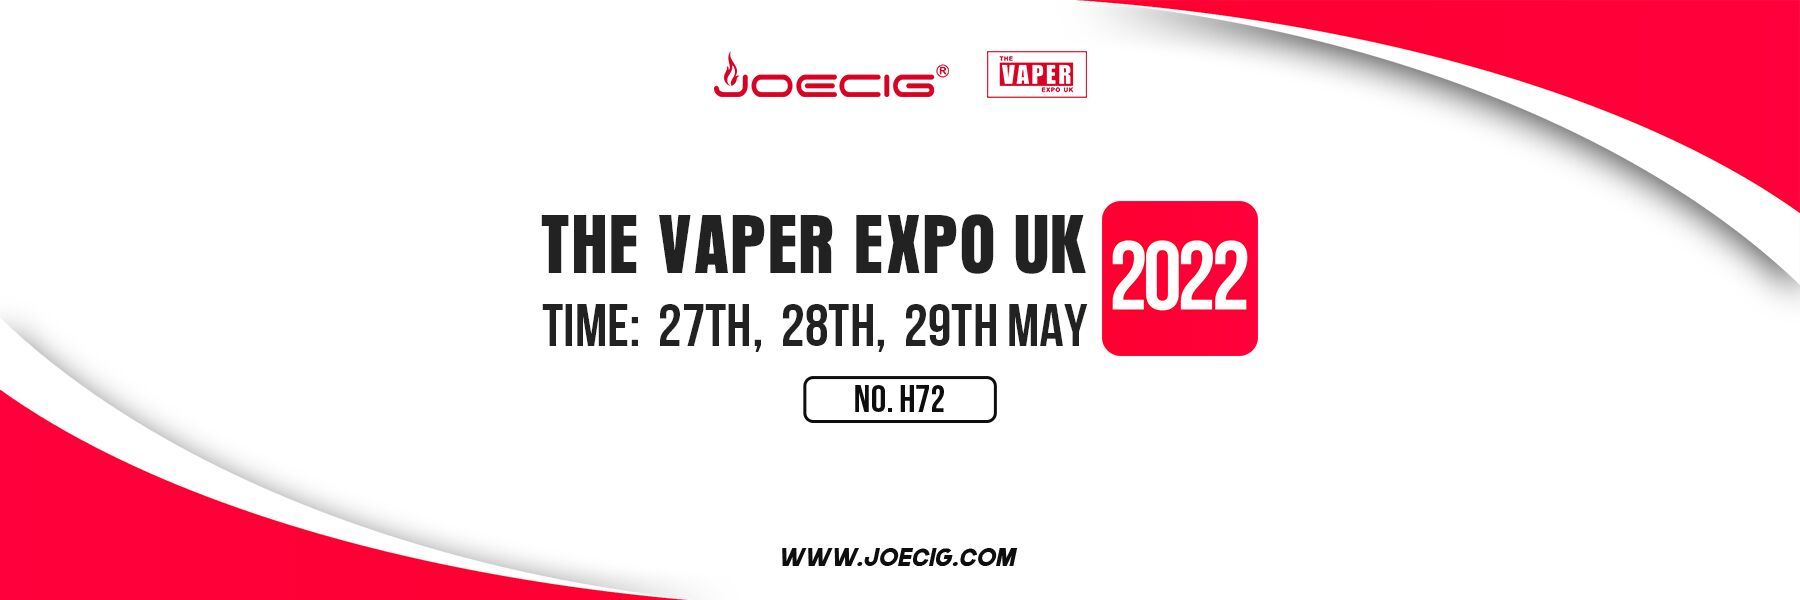 Joecig te invita a asistir a The vaper EXPO UK del 27 al 29 de mayo de 2022